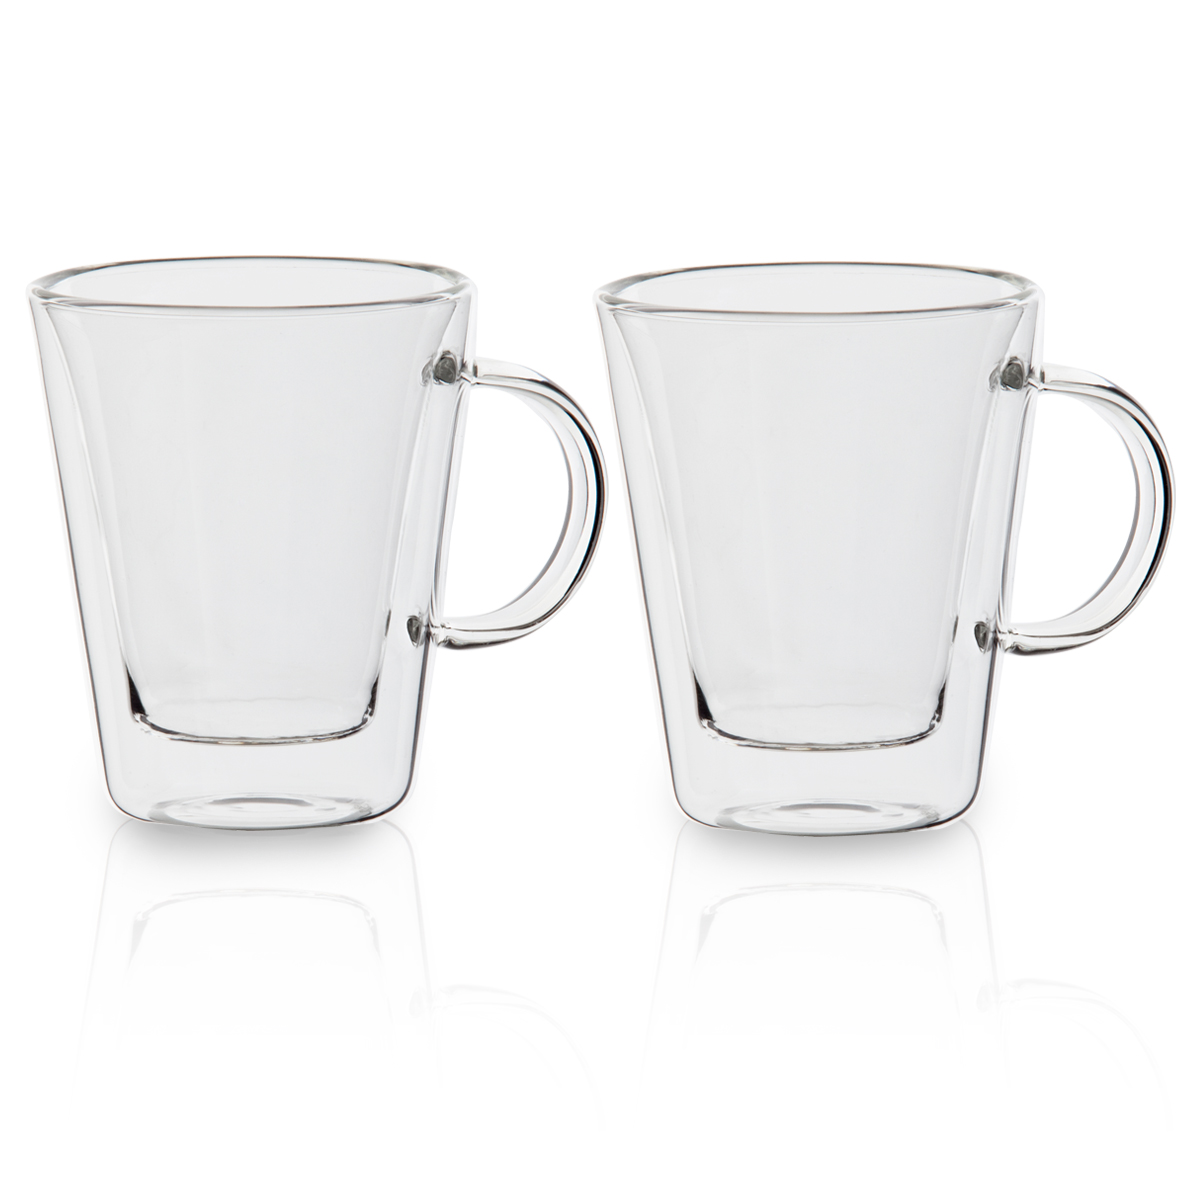 אתיופיה - זוג כוסות עם דופן כפולה וידית נפח 350 מ”ל. 
זוג כוסות זכוכית עם ידית.
דופן כפולה לבידוד המשקה.
סטנדרט איכות גבוה.
הכוס עמידה לשימוש במדיח.
עיצוב מהודר וקלאסי.